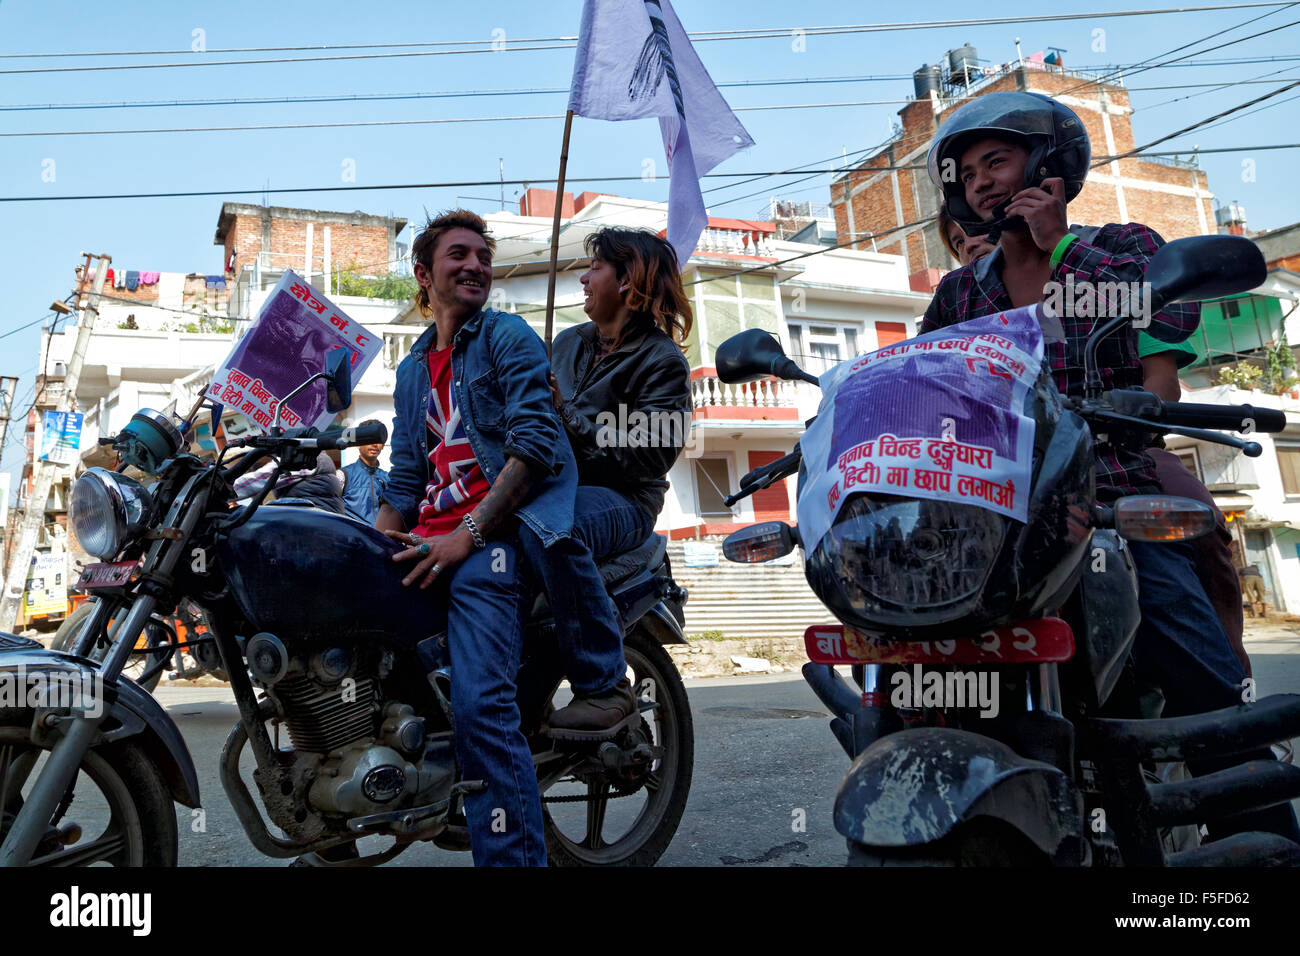 Rassemblement des motards népalais pour un rassemblement politique. Le swastika est un symbole hindou important utilisé ici comme un porte-bonheur la protection Banque D'Images